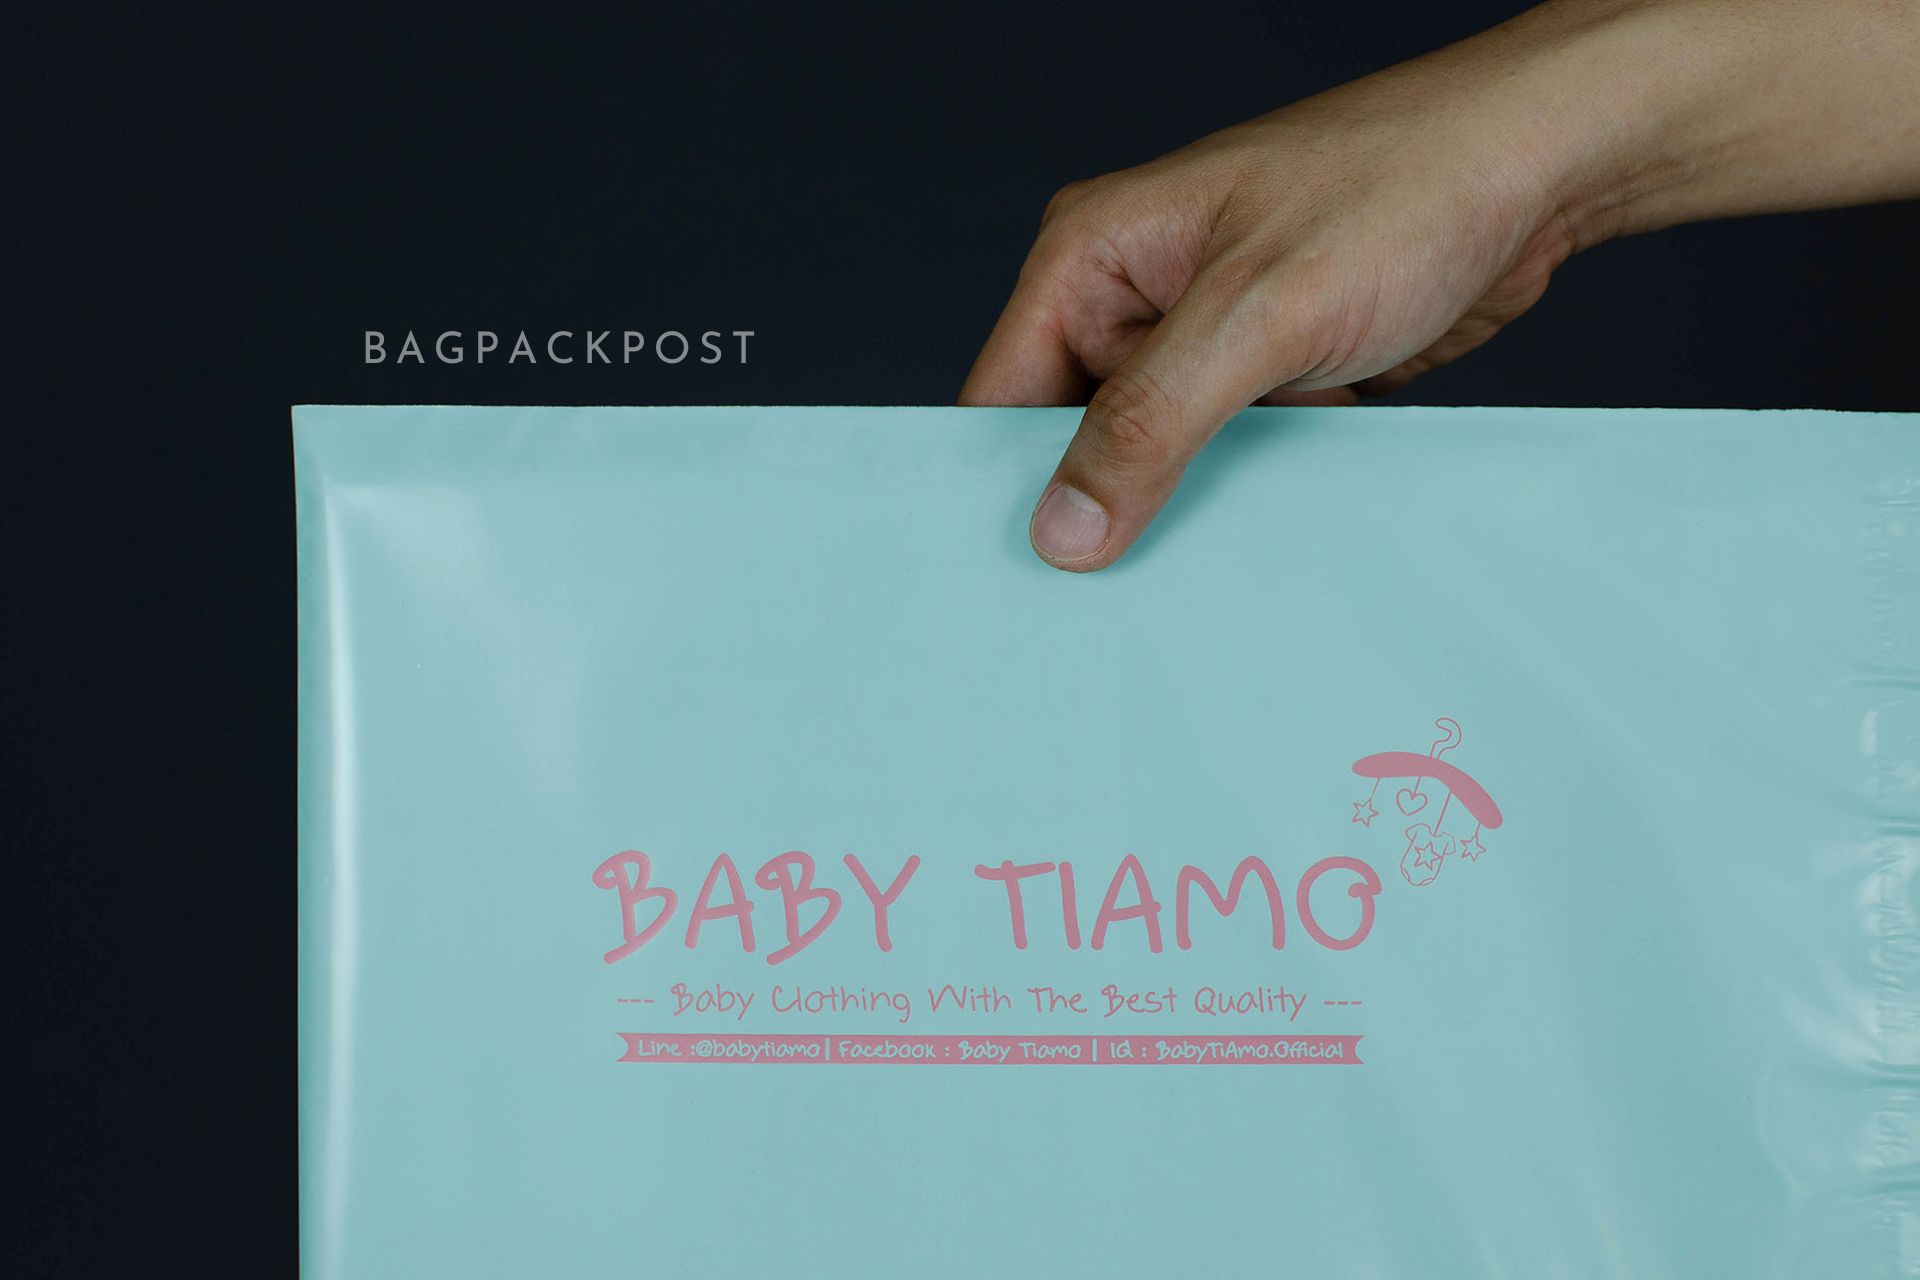 ผลิตถุงไปรษณีย์ ซองไปรษณีย์พิมพ์ลาย Baby Tiamo ซองไปรษณีย์สีเขียวมิ้นท์ ถุงไปรษณีย์พิมพ์ลาย 1 BagPackPost